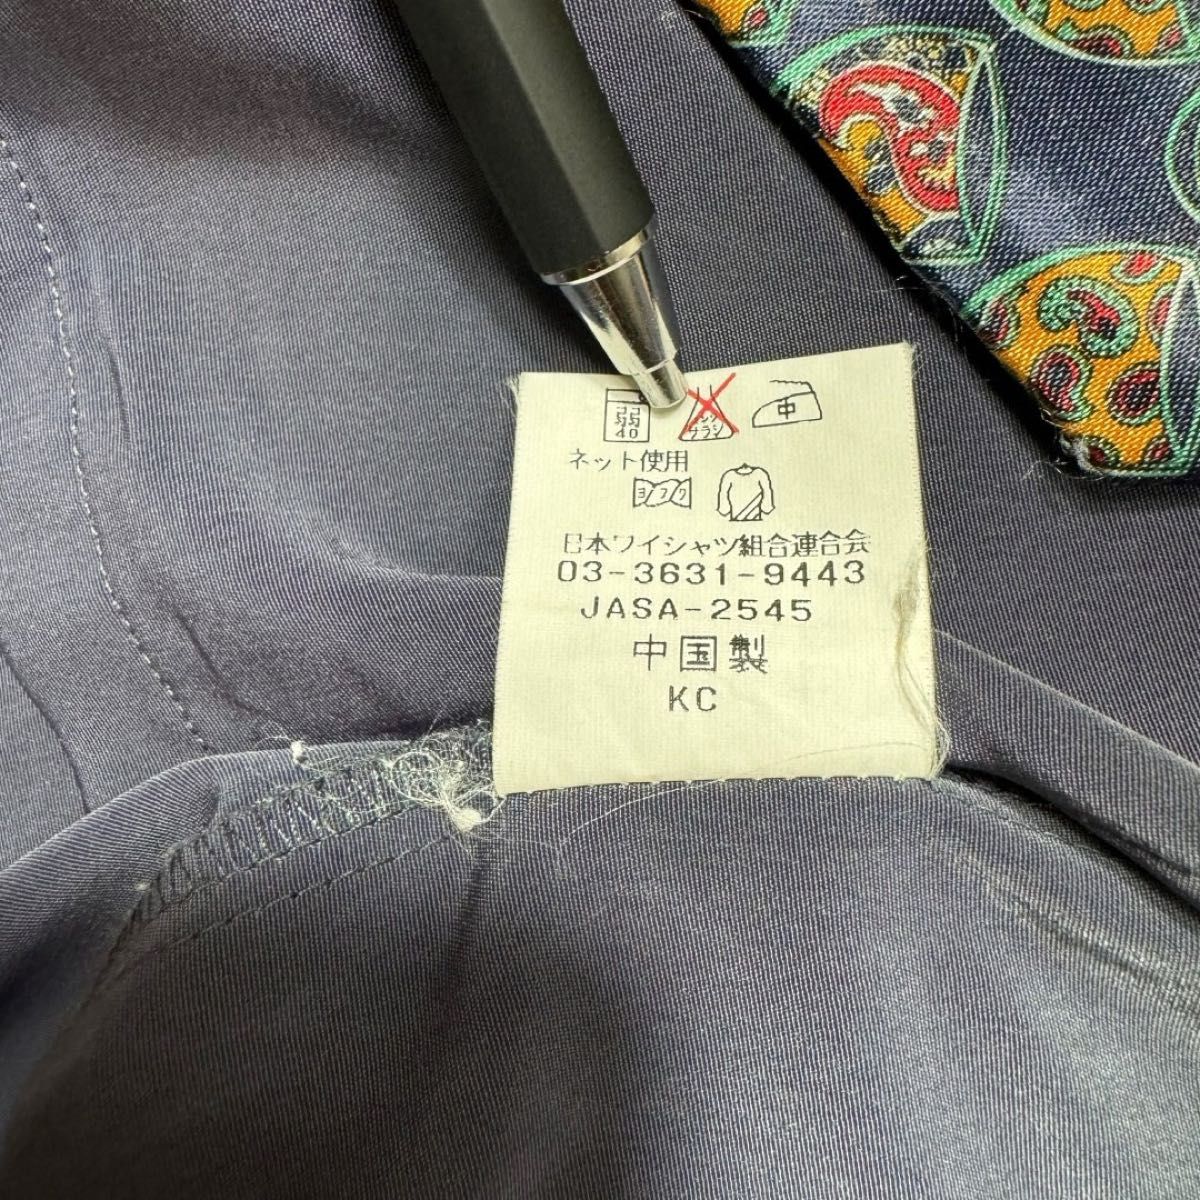 【古着】 ワイシャツ ネクタイ セット売り ポリシャツ ワンポイント 刺繍 くすみ系 Lサイズ